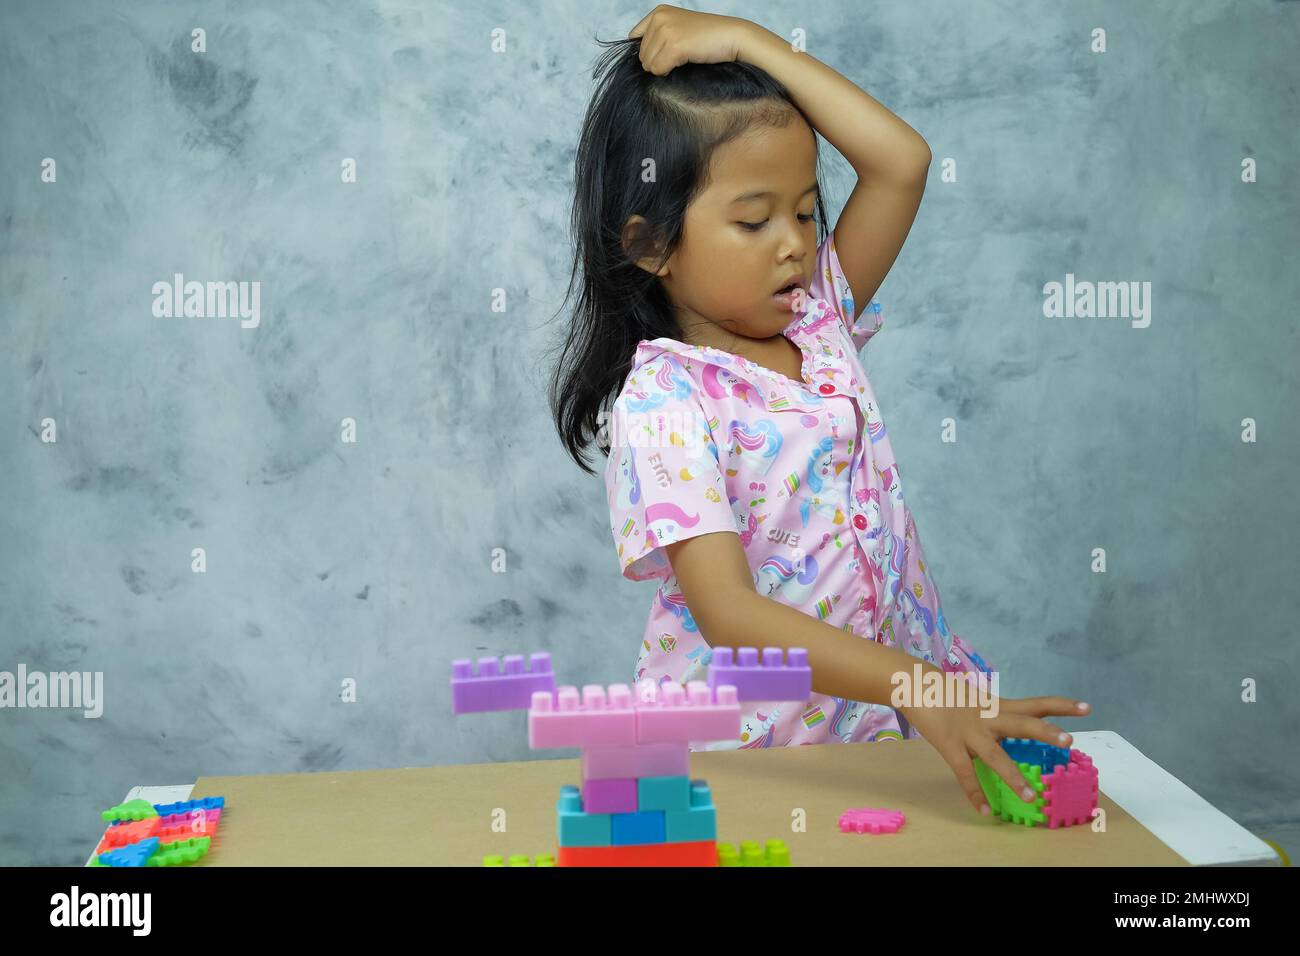 Un primo piano di una bambina del sud-est asiatico che gioca con colorati cubi di plastica Foto Stock